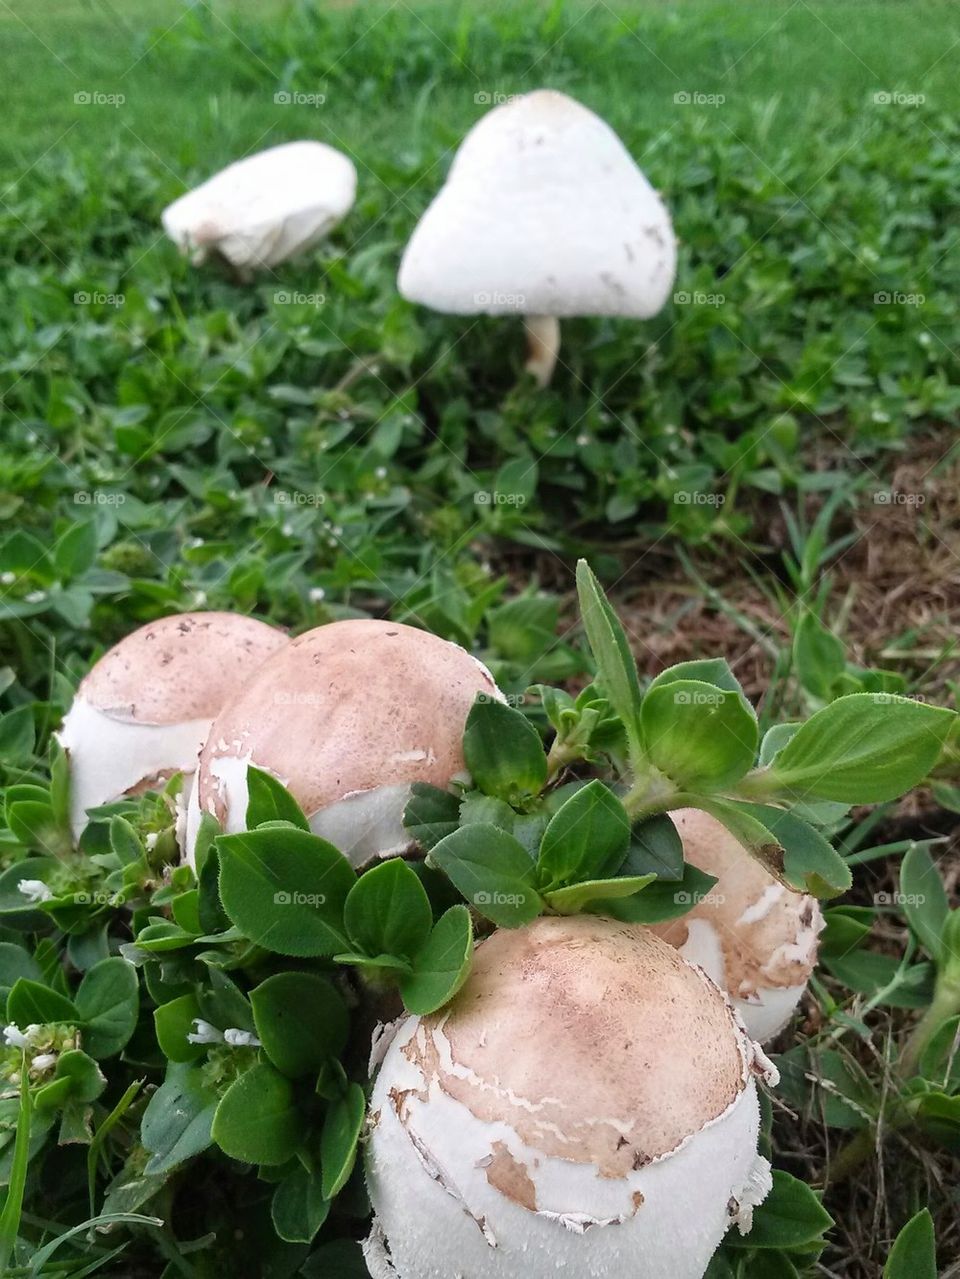 fungi caps